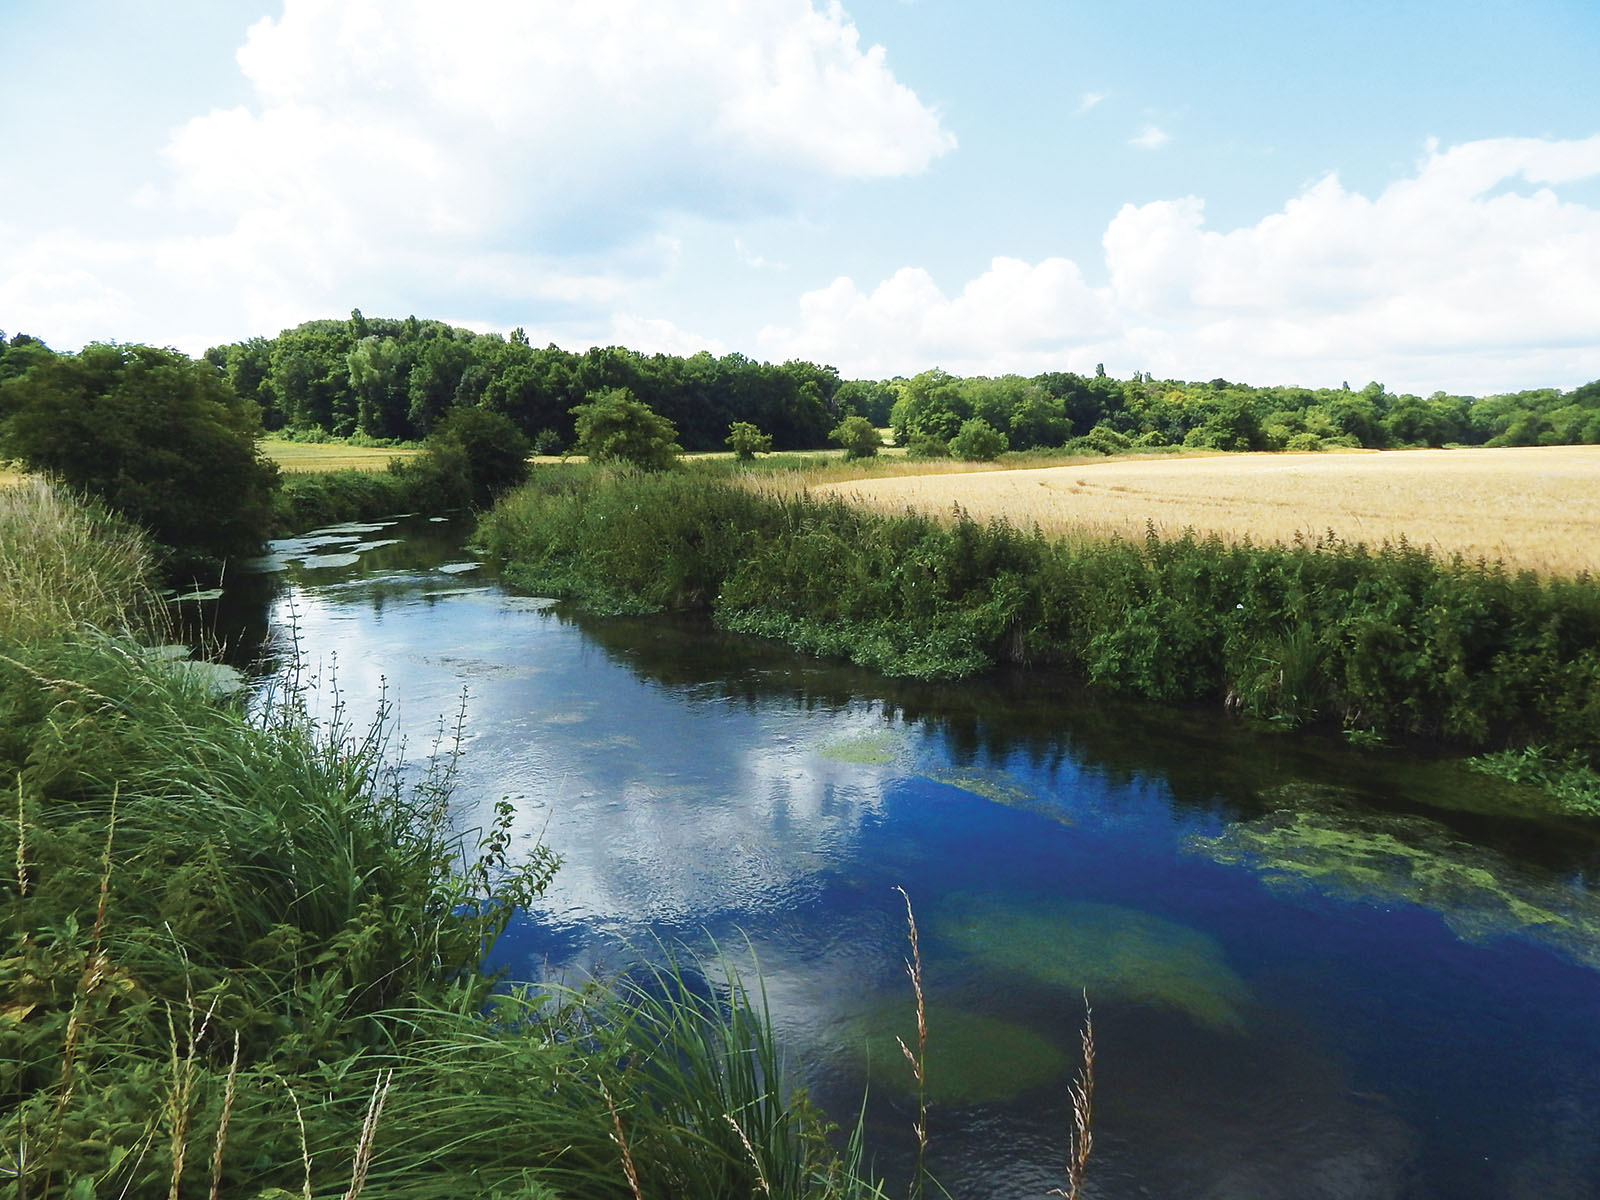 Le Syndicat mixte des bassins versants de la rivière École, du ru de la Mare-aux-Évées et de leurs Affluents (SEMEA) a pour missions la préservation de la qualité et la disponibilité de la ressource en eau ainsi que la maîtrise des risques inondations.